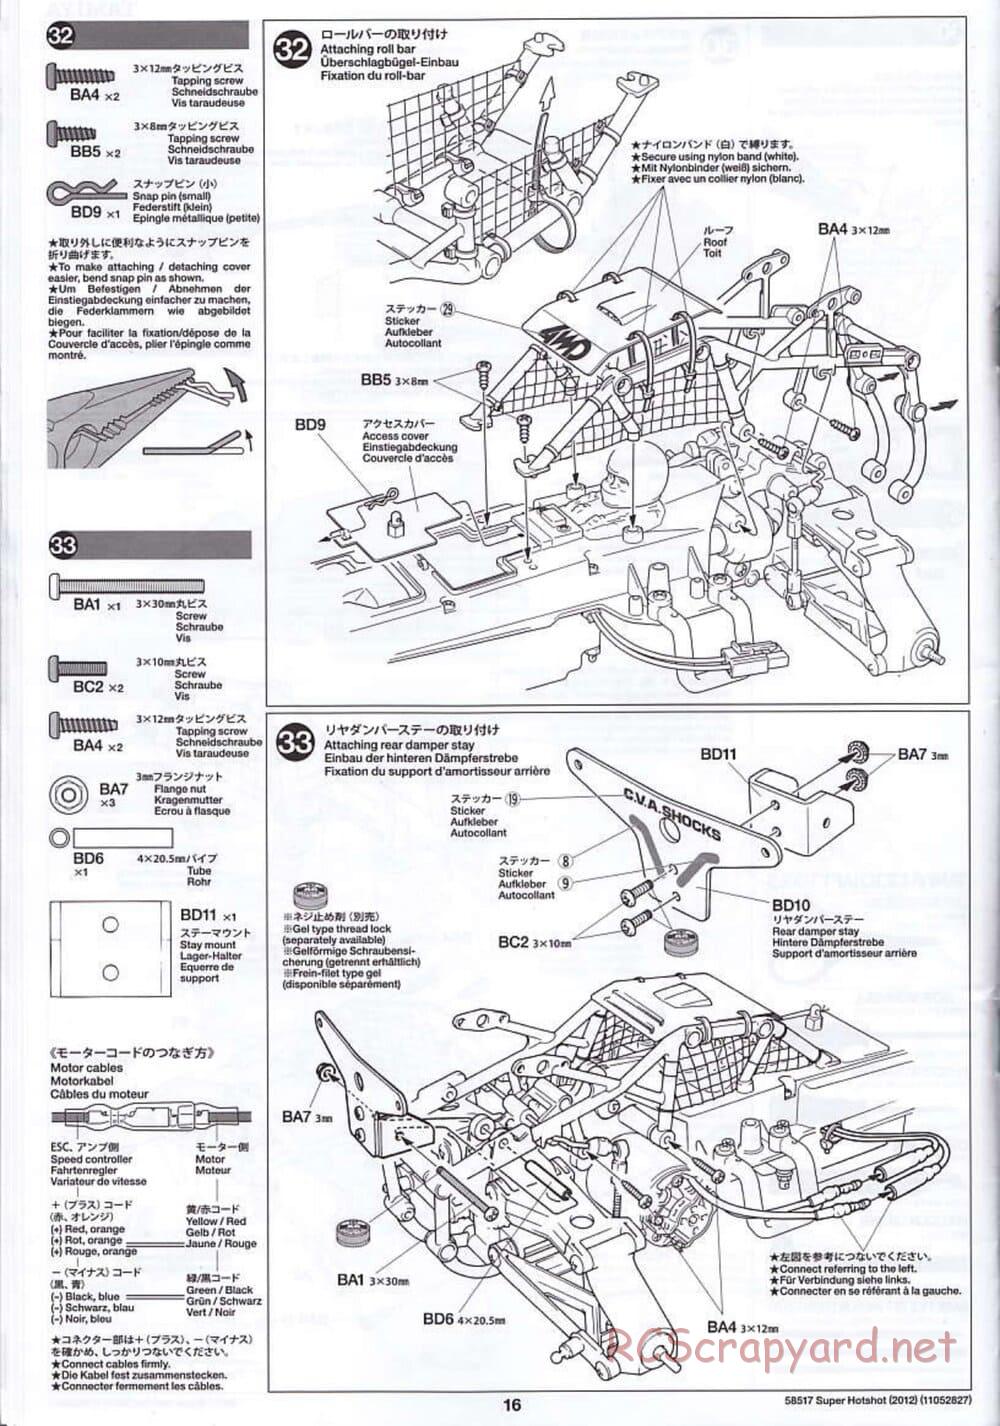 Tamiya - Super Hotshot 2012 - HS Chassis - Manual - Page 16